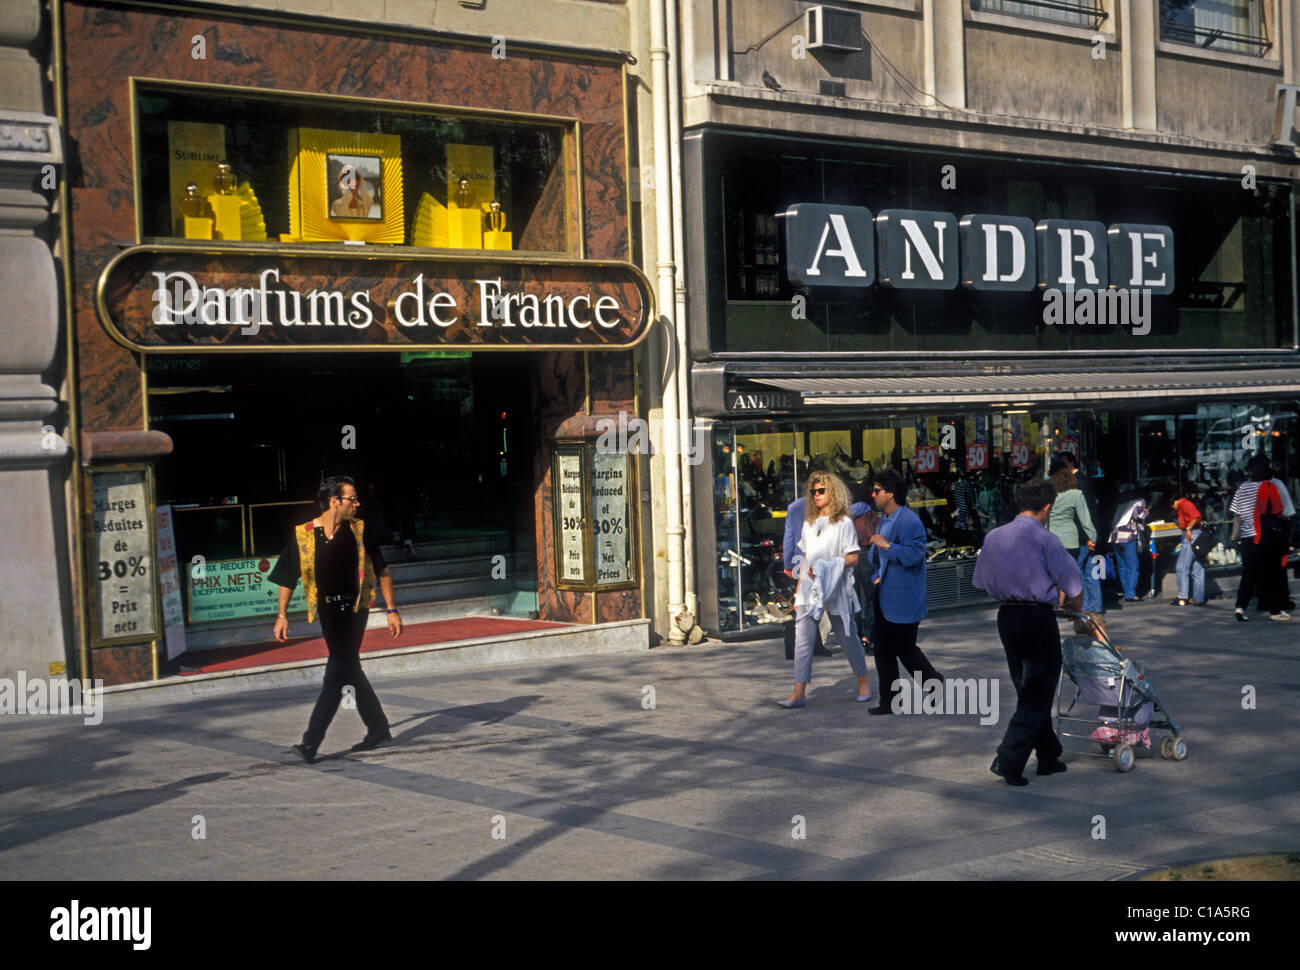 Personne français shopping Avenue des Champs-Elysées de Paris Ile-de-France France Europe Banque D'Images